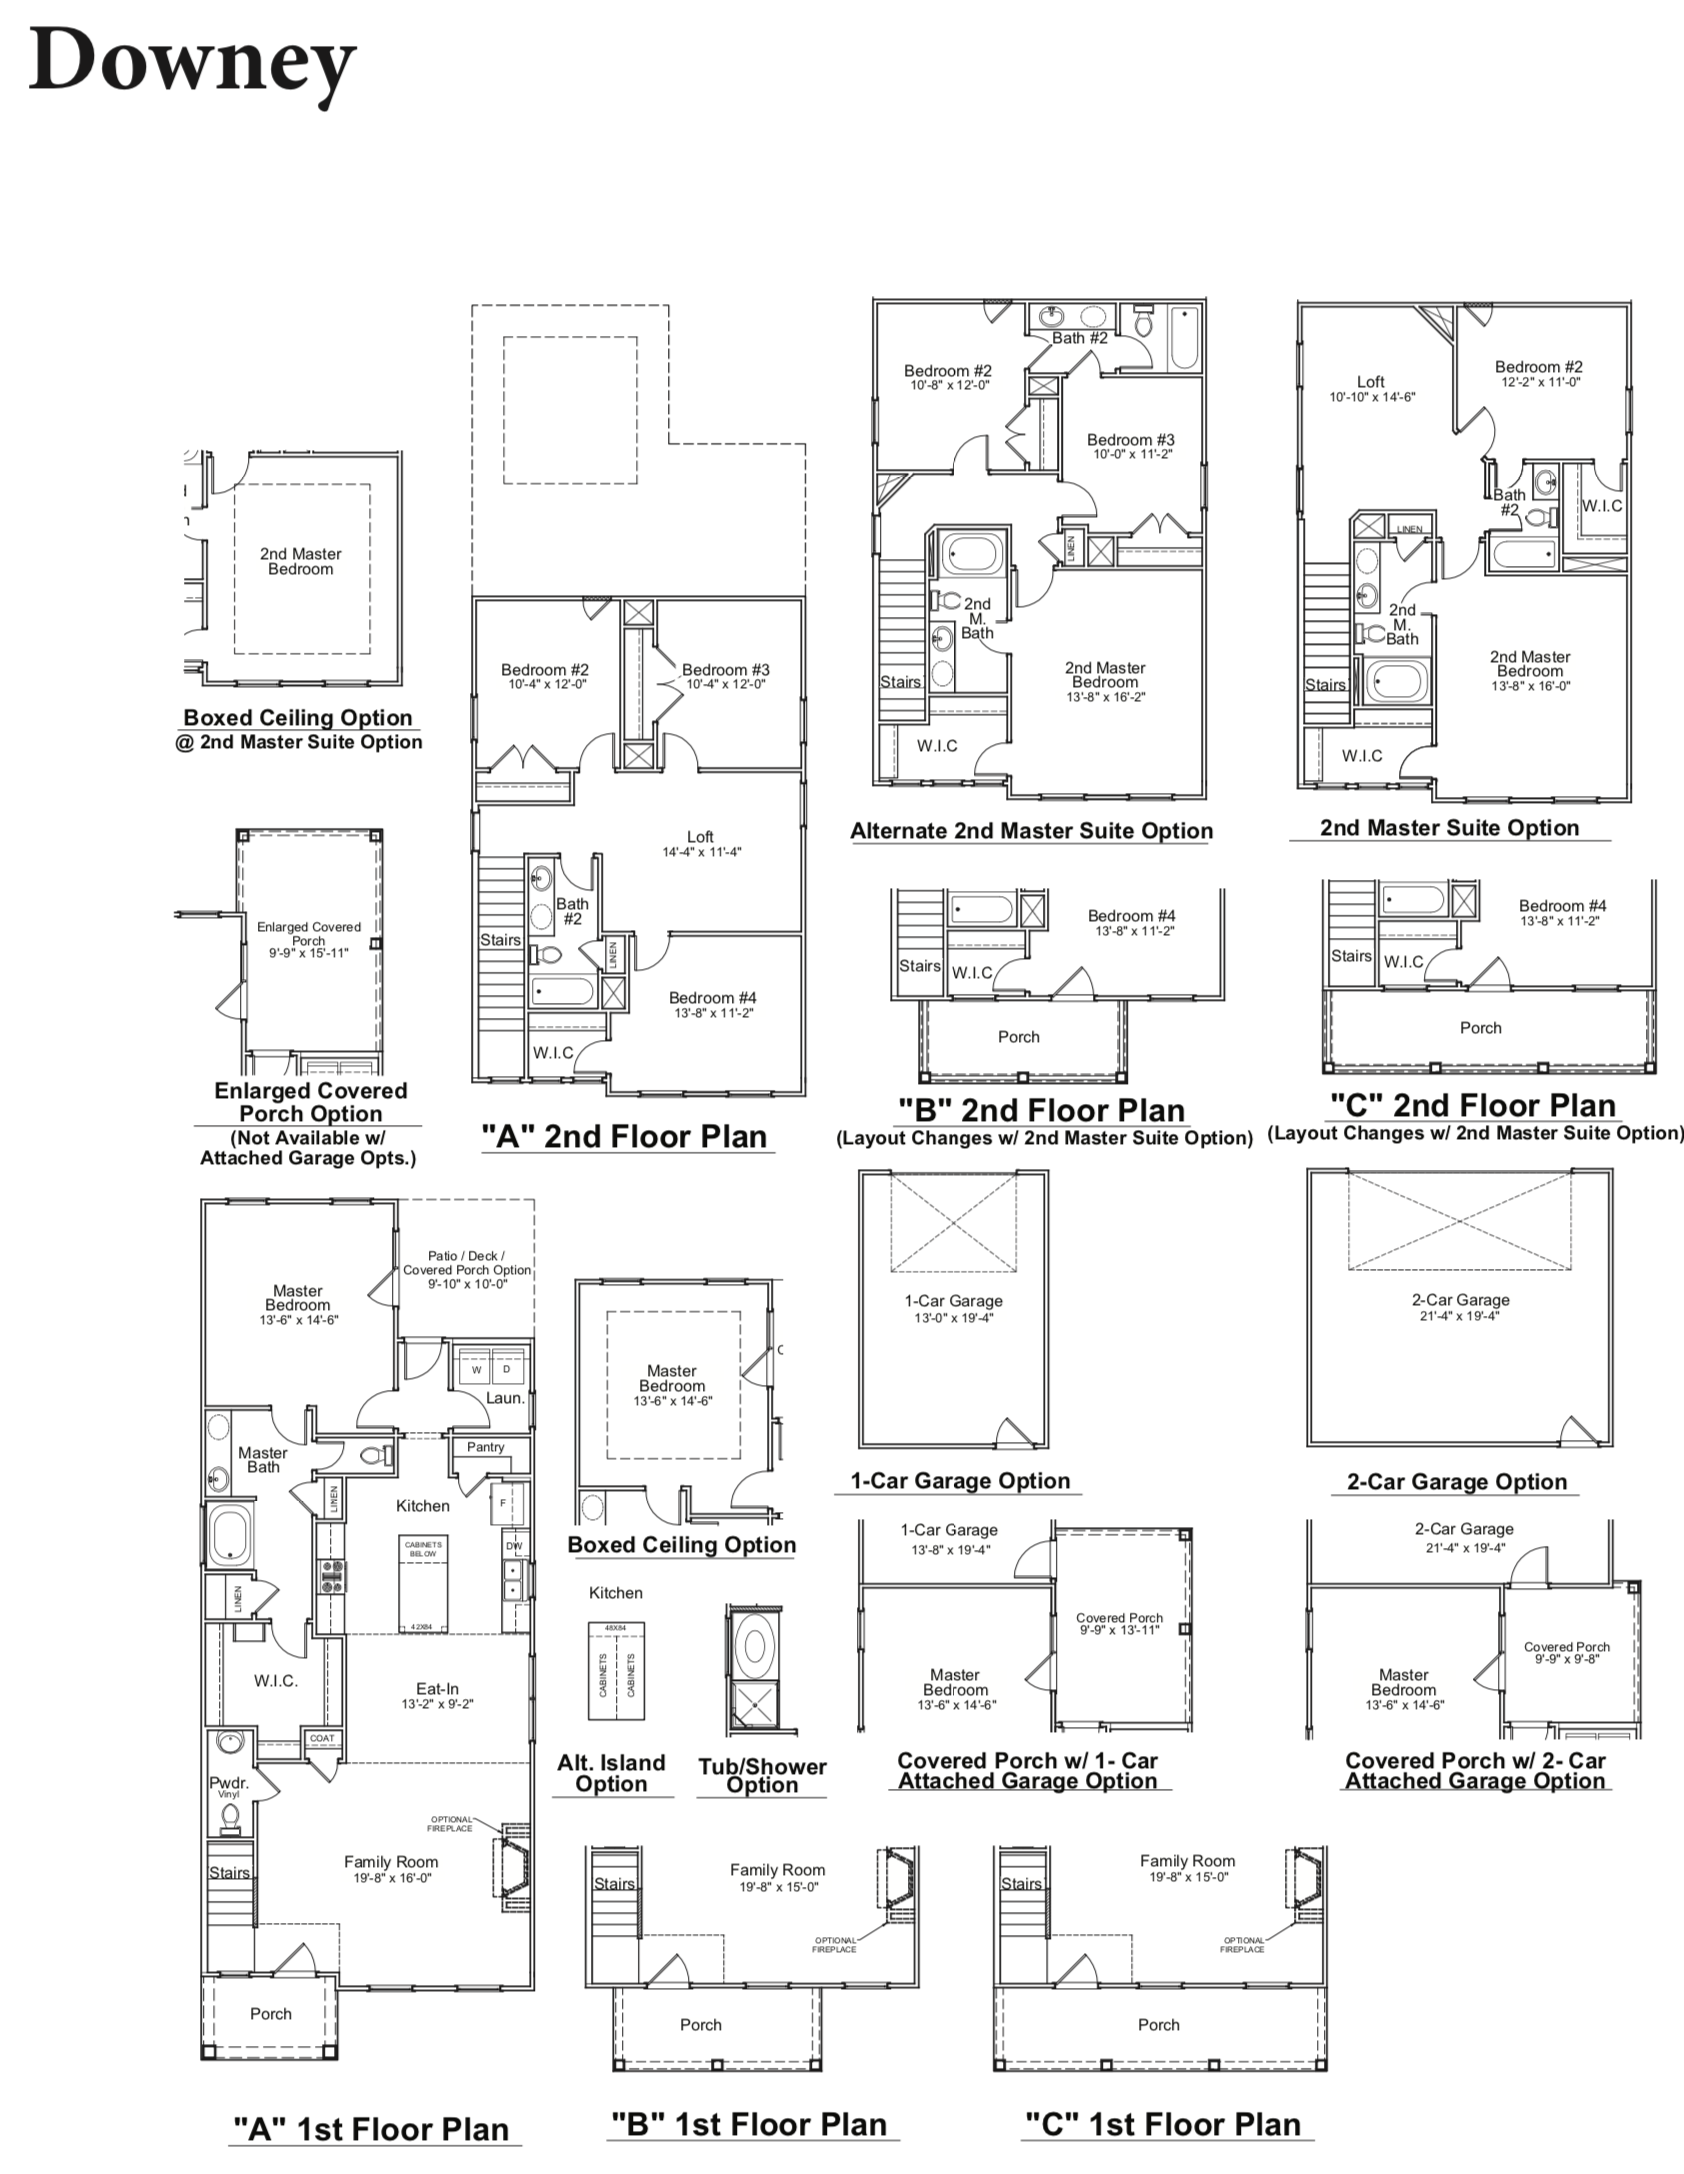 Downey floor plan image